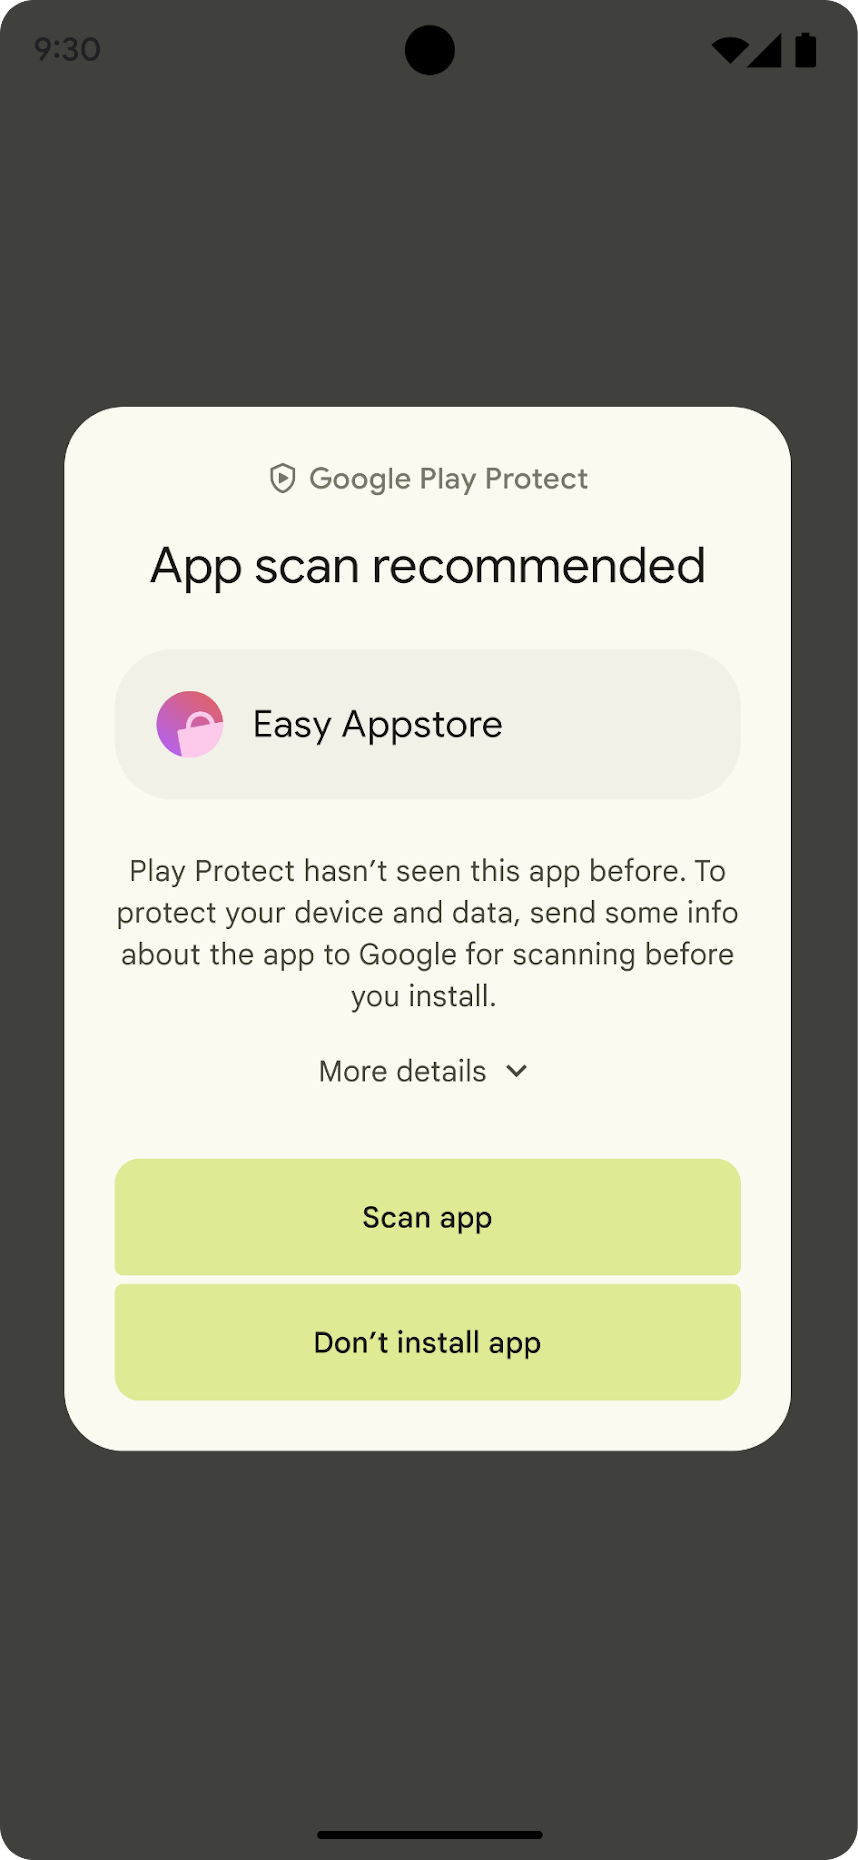 دو دکمه روی دیالوگ، از بالا به پایین، Scan app و Don't install app هستند